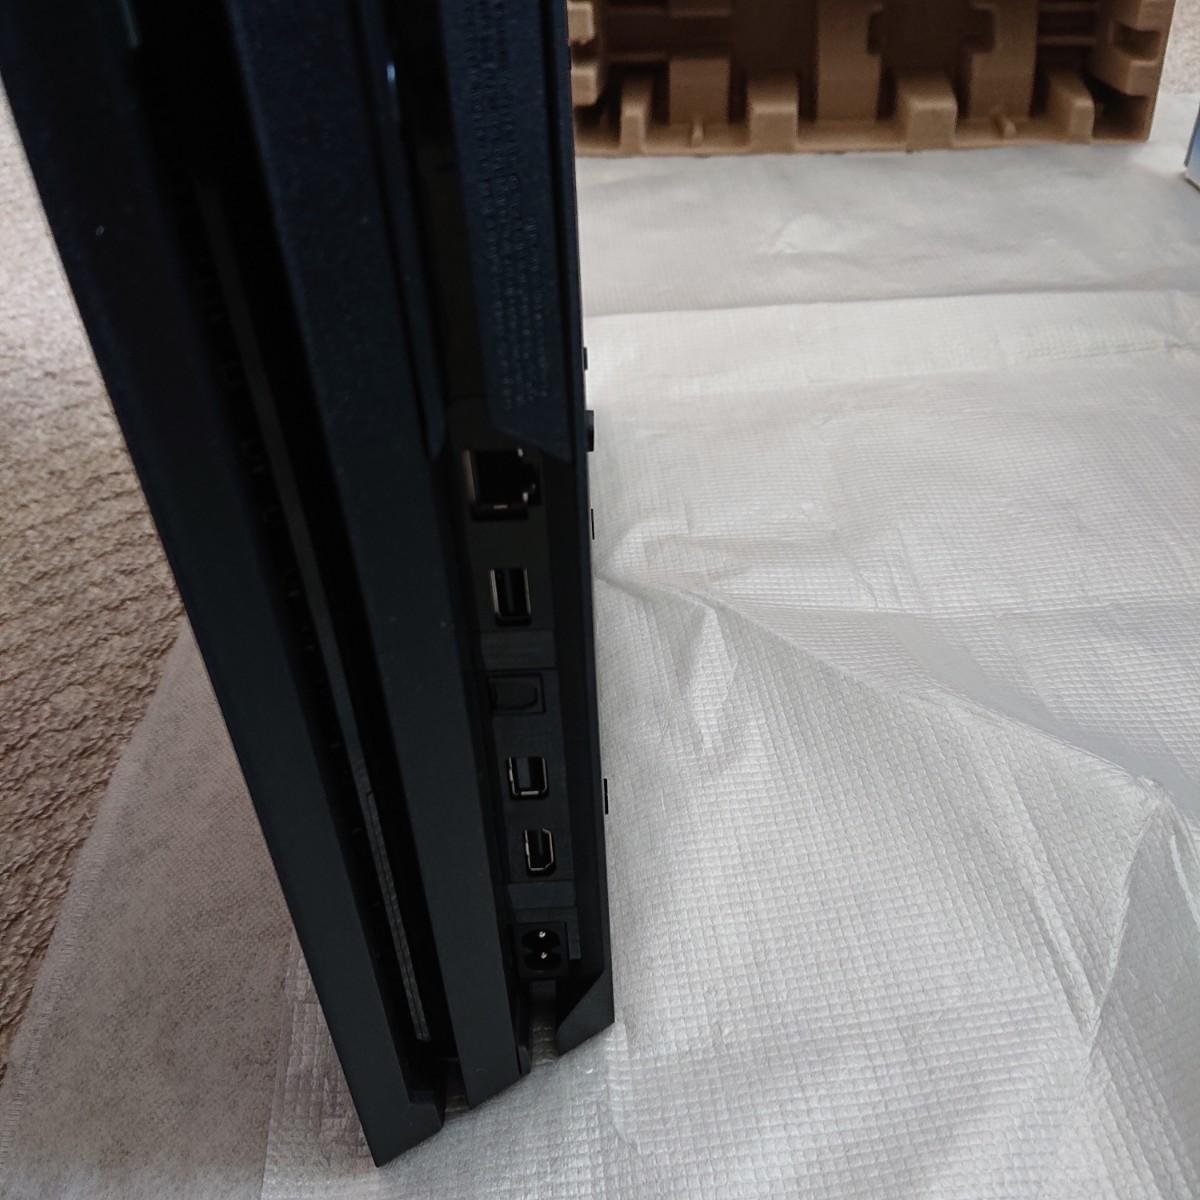 【国内即発送】 SONY PS4本体 CUH-7200BB01 Pro PlayStation4 その他